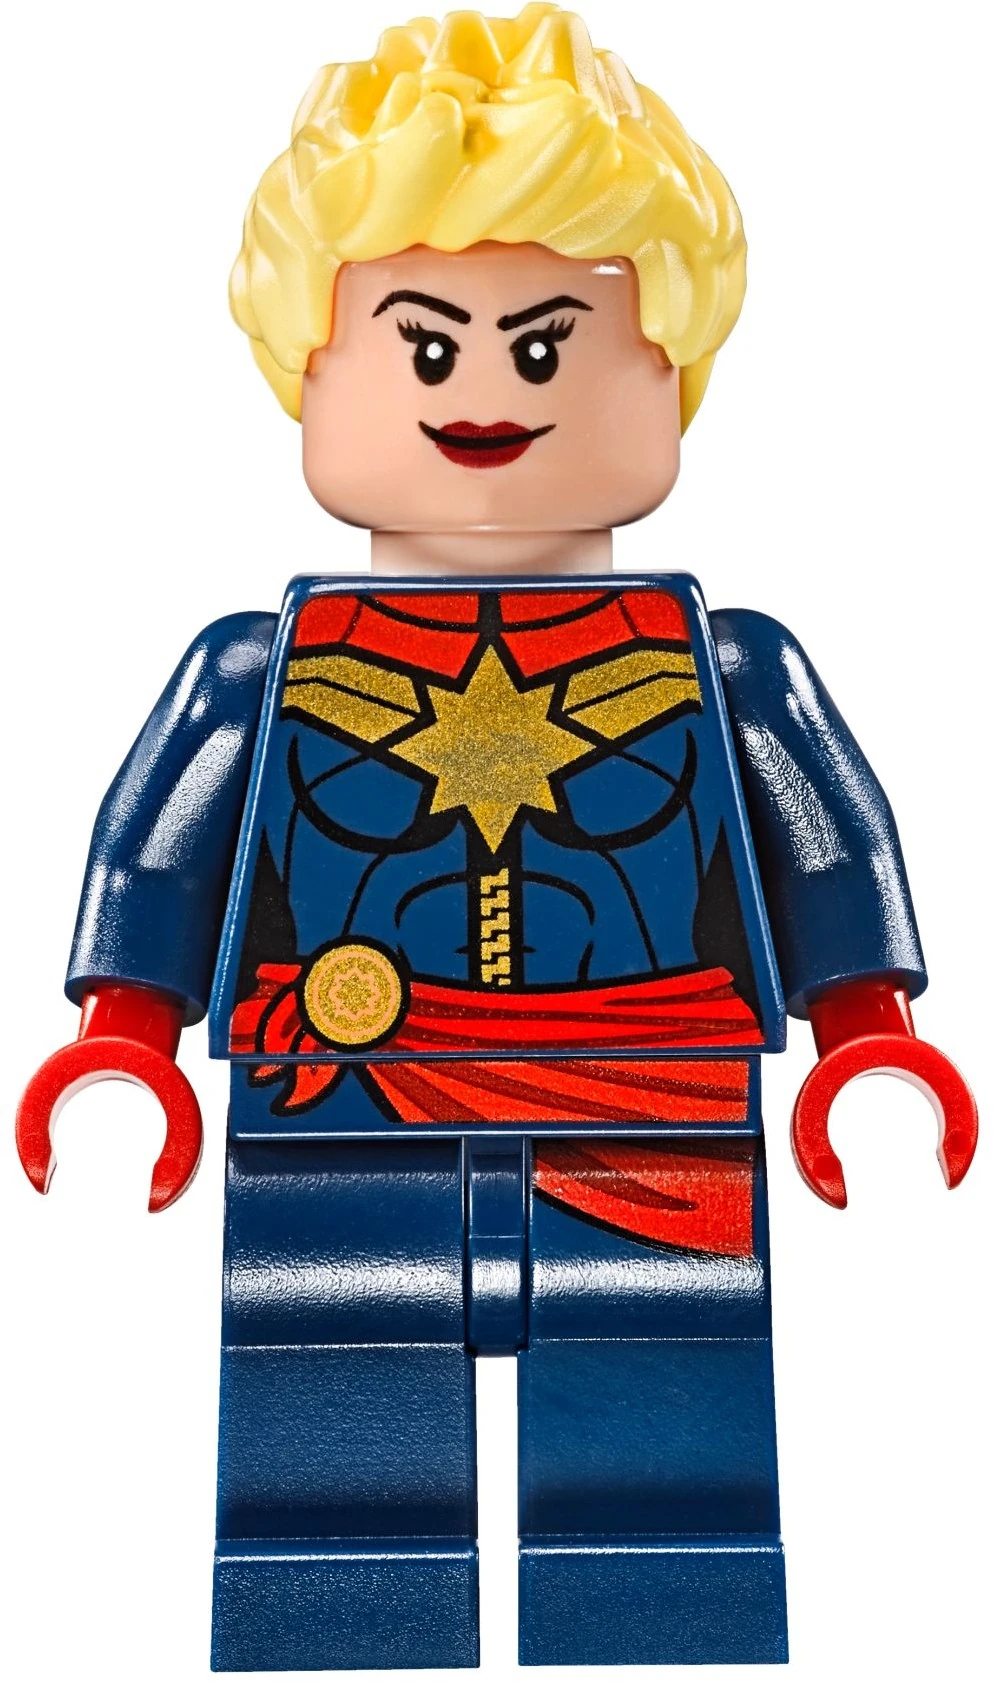 LEGO Superheroes Minifigure Captain Marvel Vers Kree Starforce Uniform 77902 